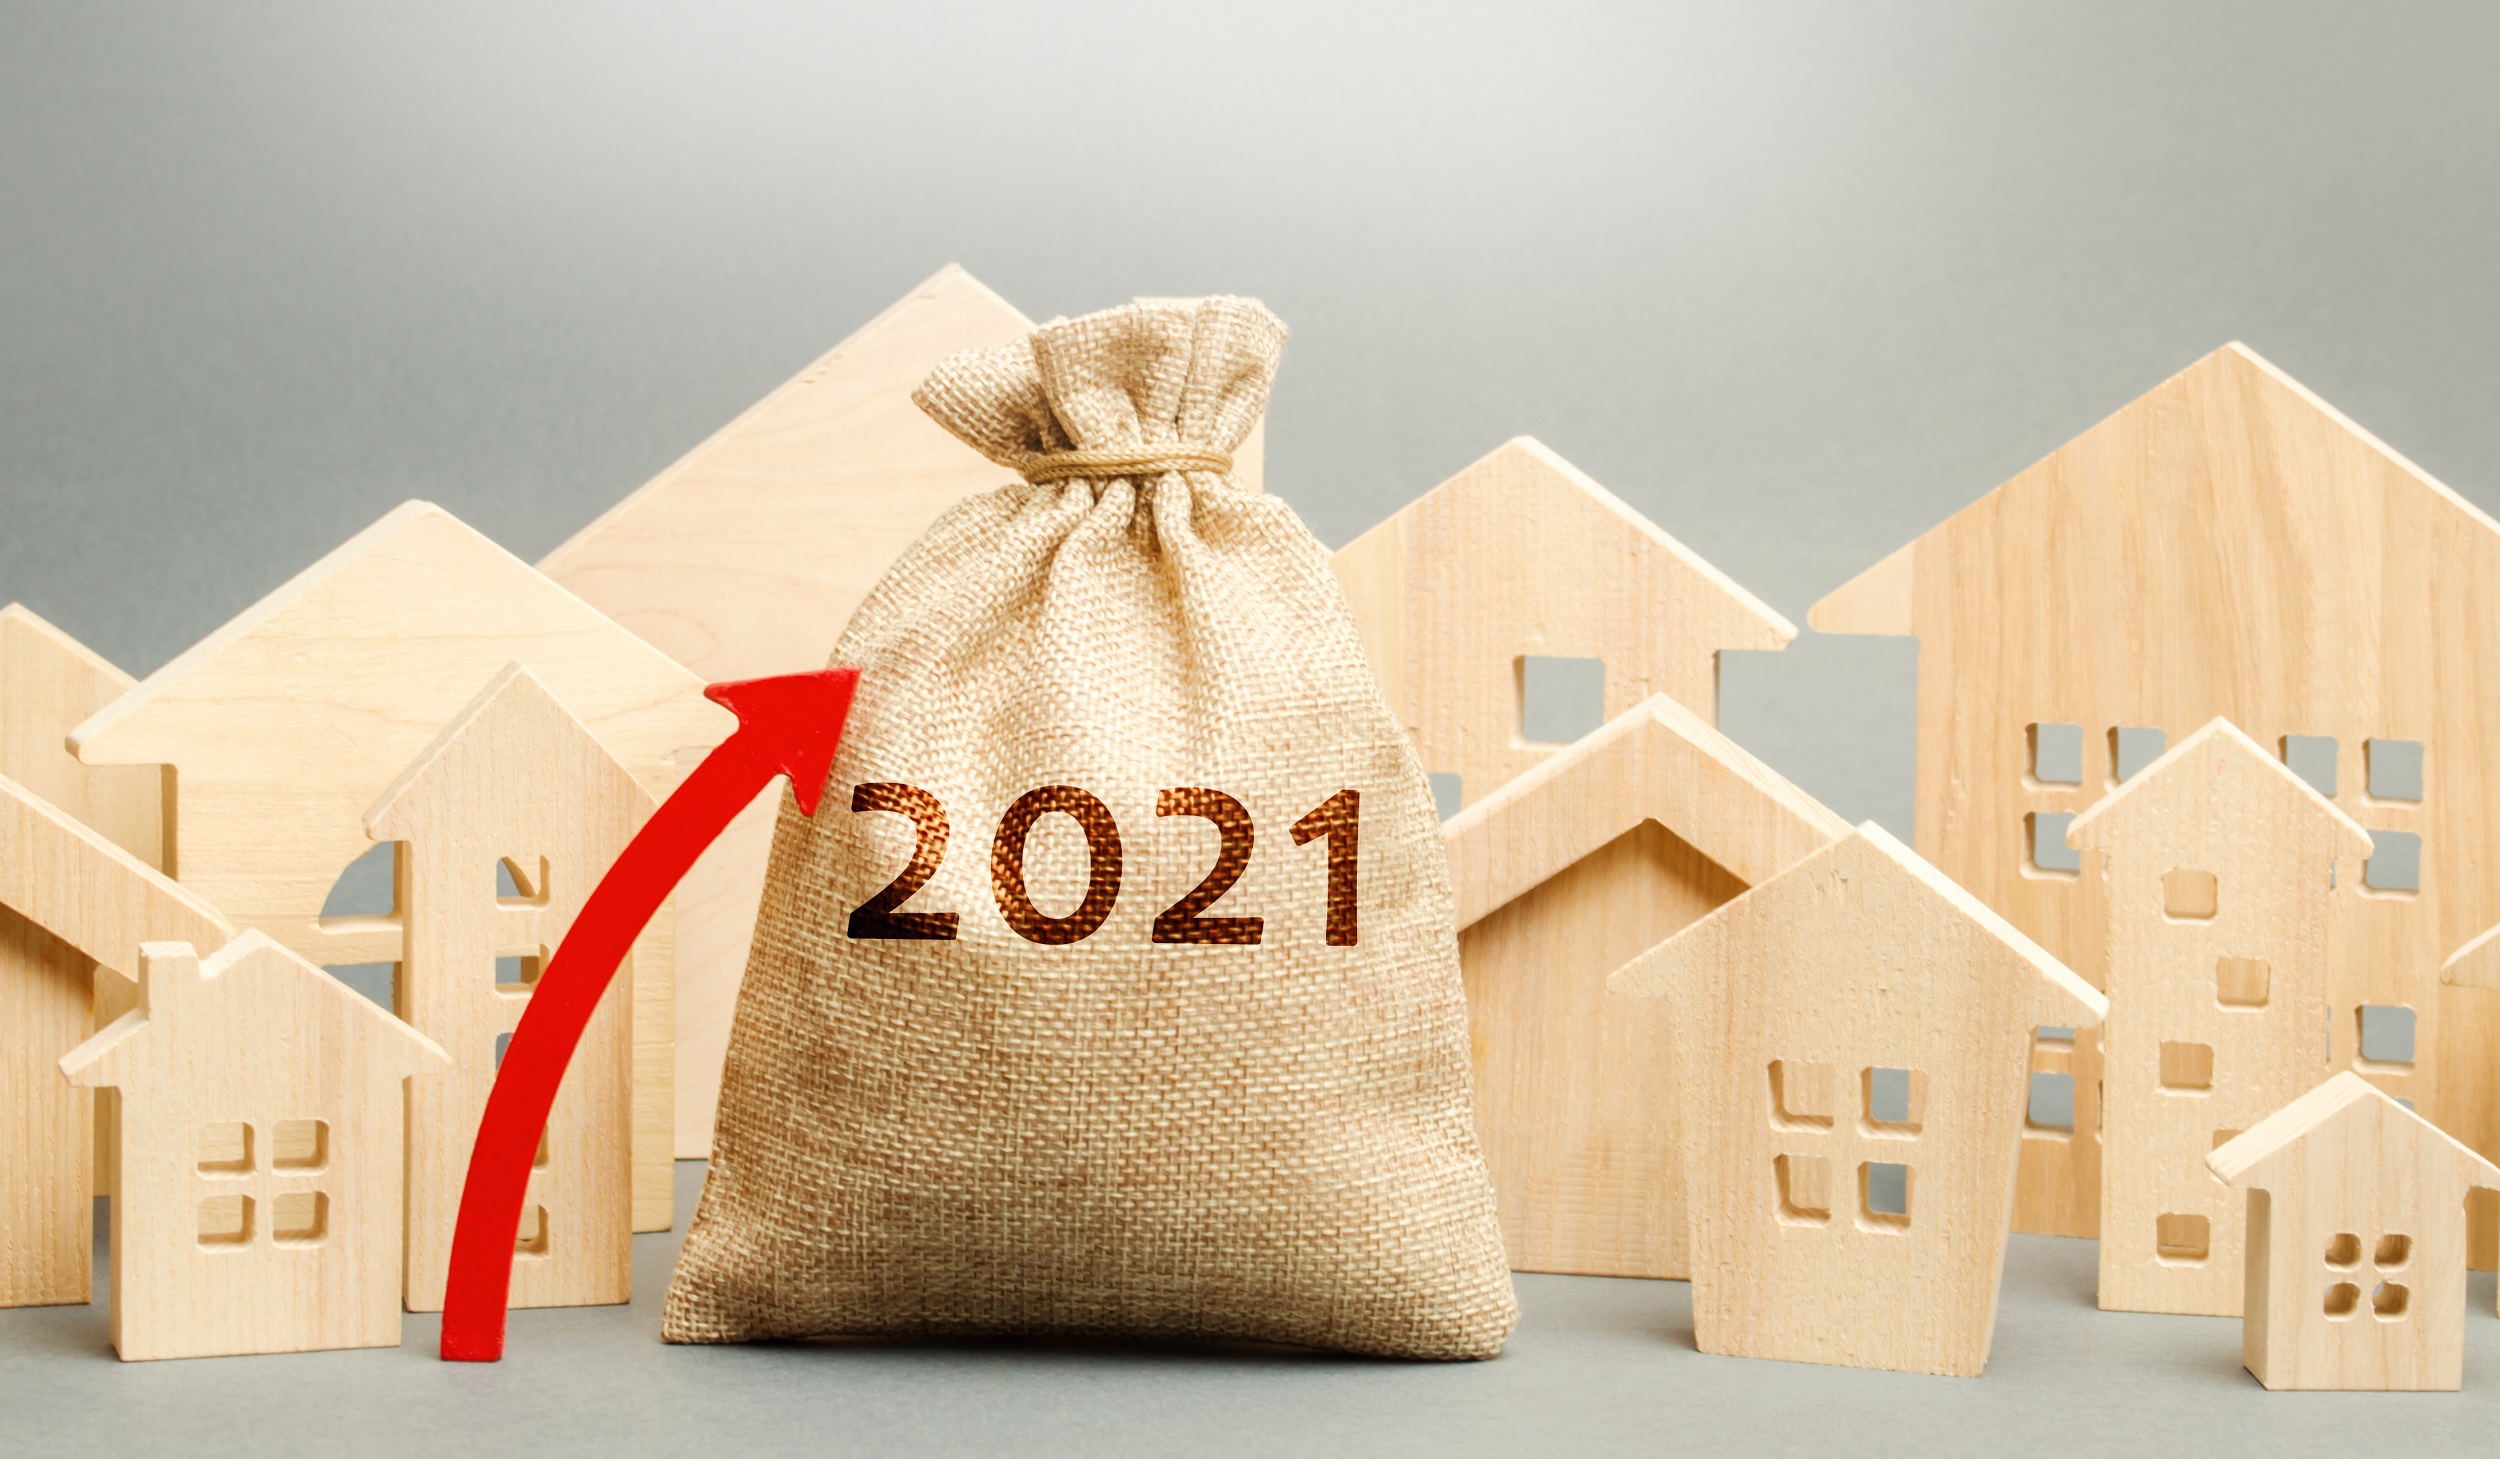 Pokles cen nemovitostí? Dá se očekávat v roce 2021?